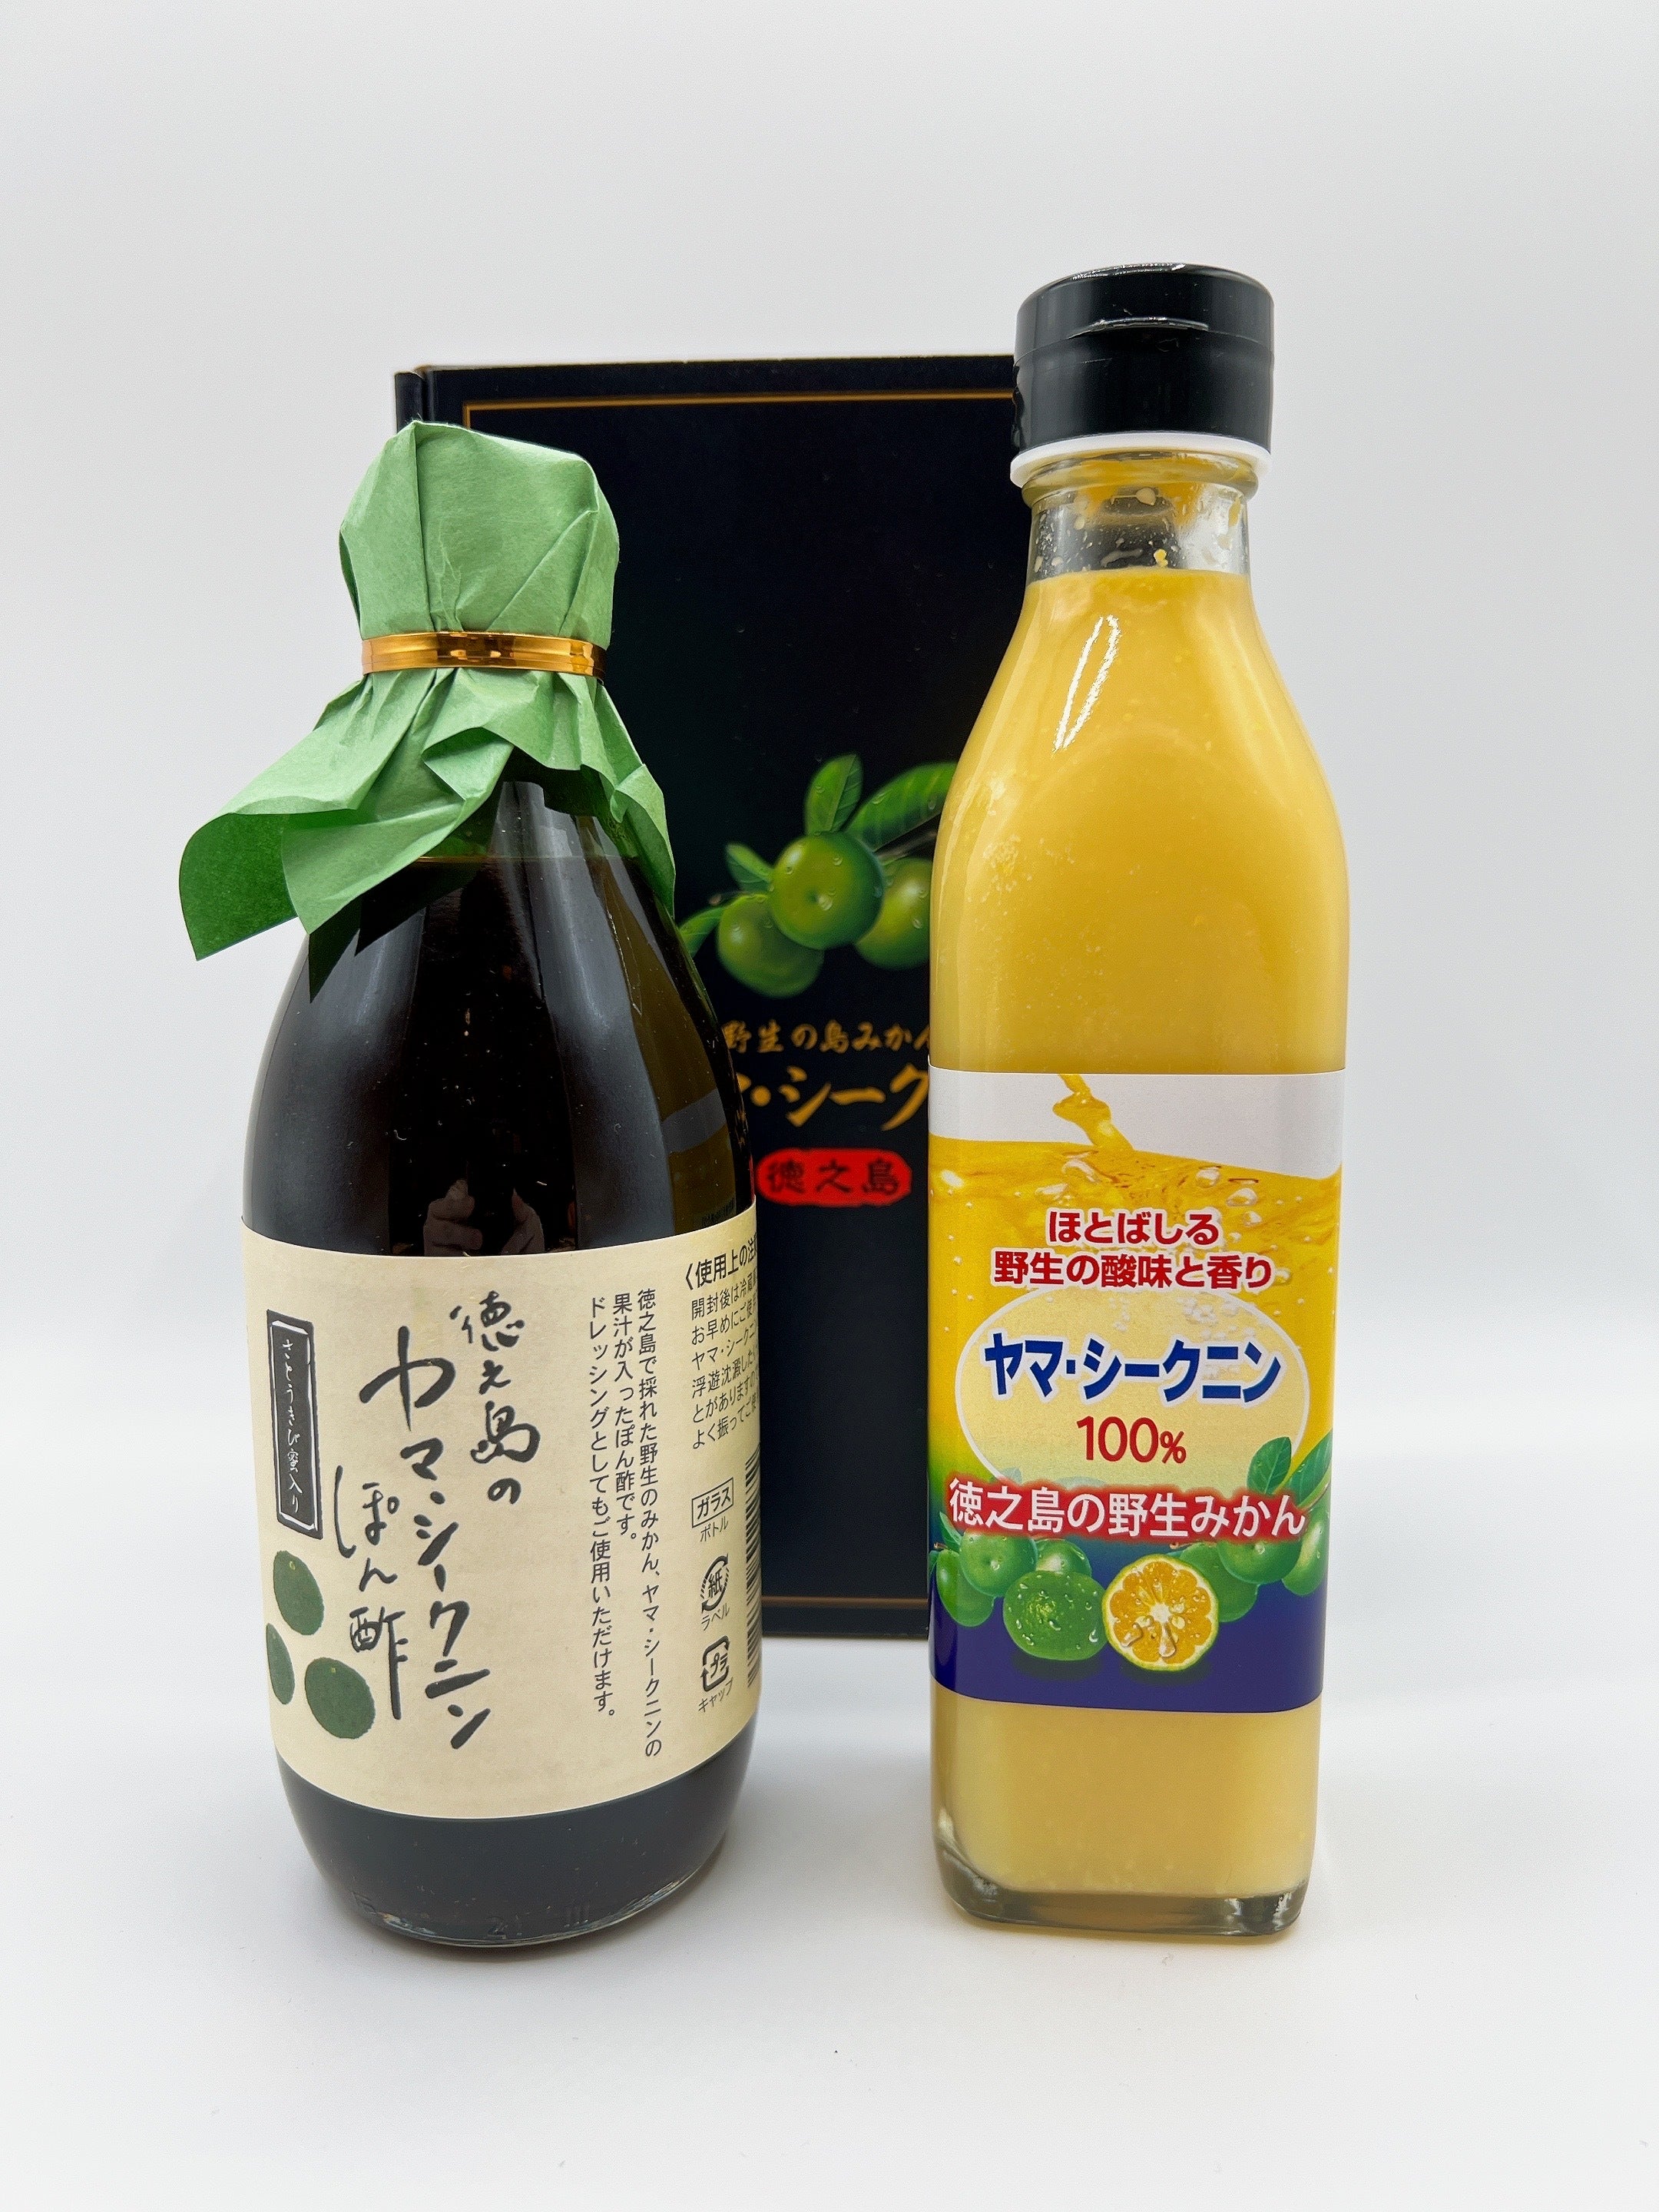 ヤマ・シークニン果汁３００ml・ポン酢３６０mlセット – 離島直販 島国アンテナ